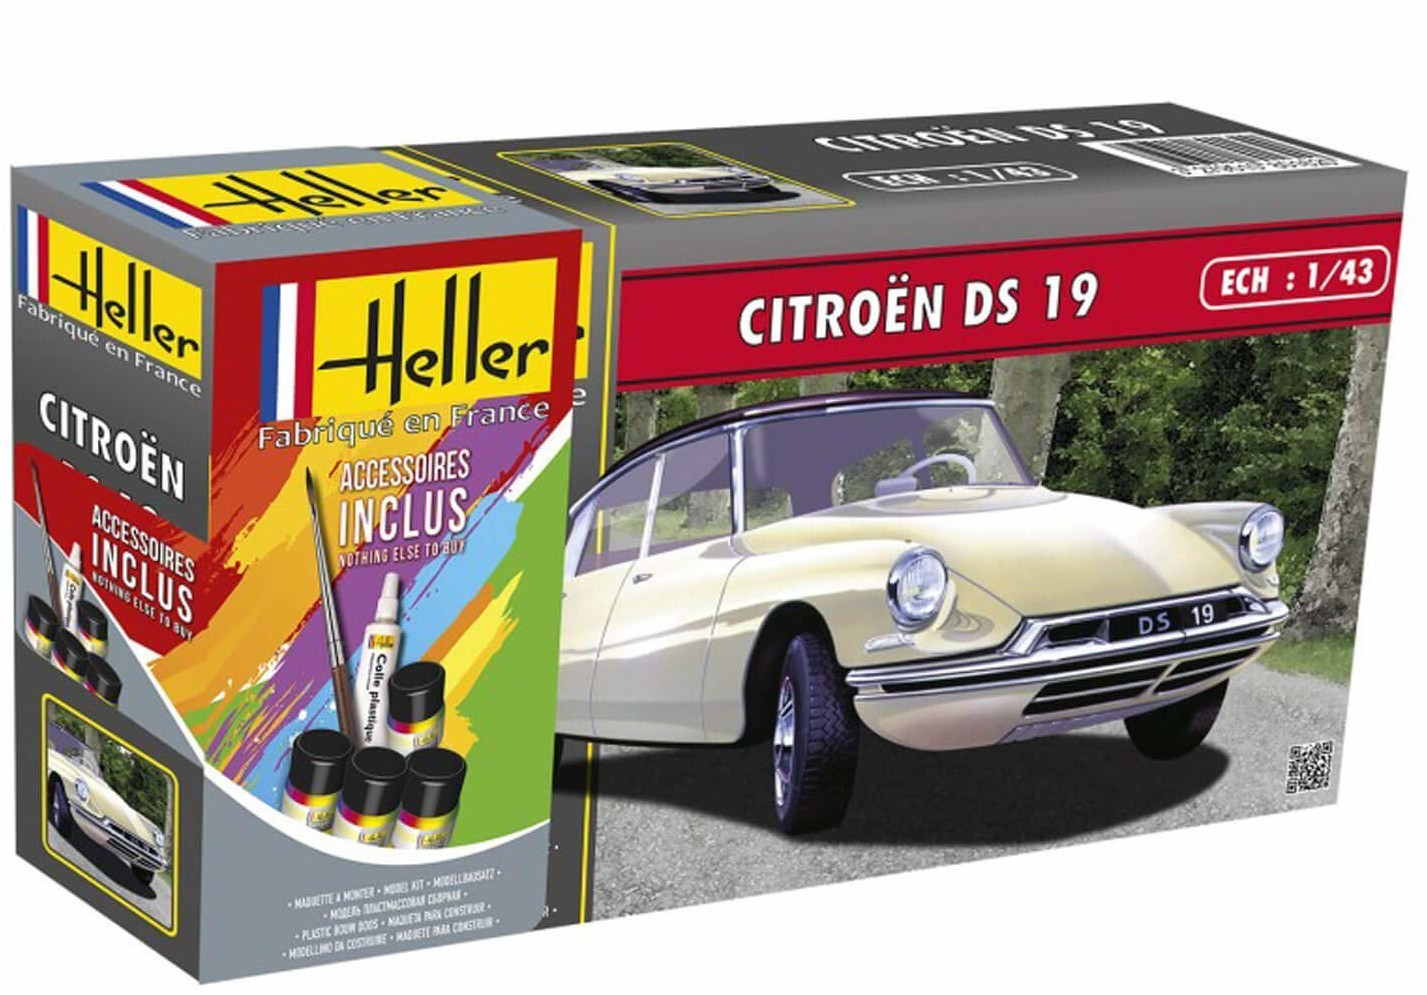 Heller Maquette voiture : Kit : Citroën 2 CV pas cher 